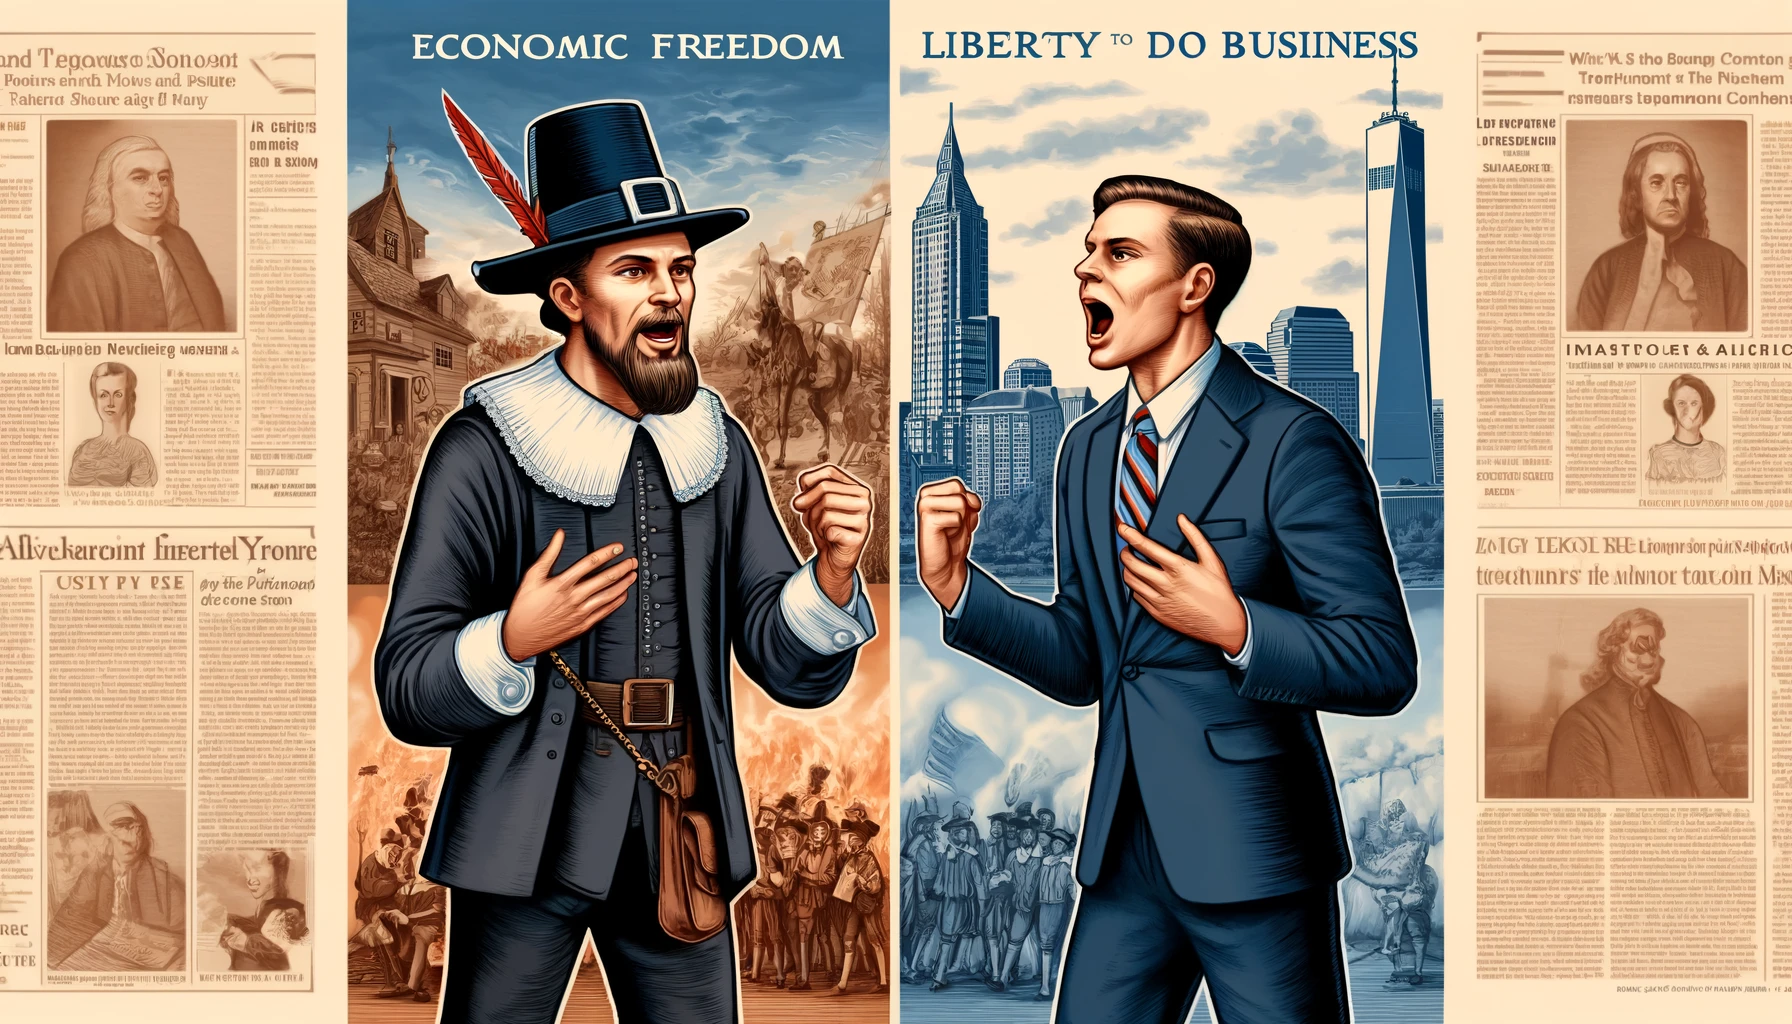 トランプ氏有罪判決から見えてくる米国の共産化 “Liberty to do business”無くして米国は無い | 大井幸子のグローバルストリームニュース